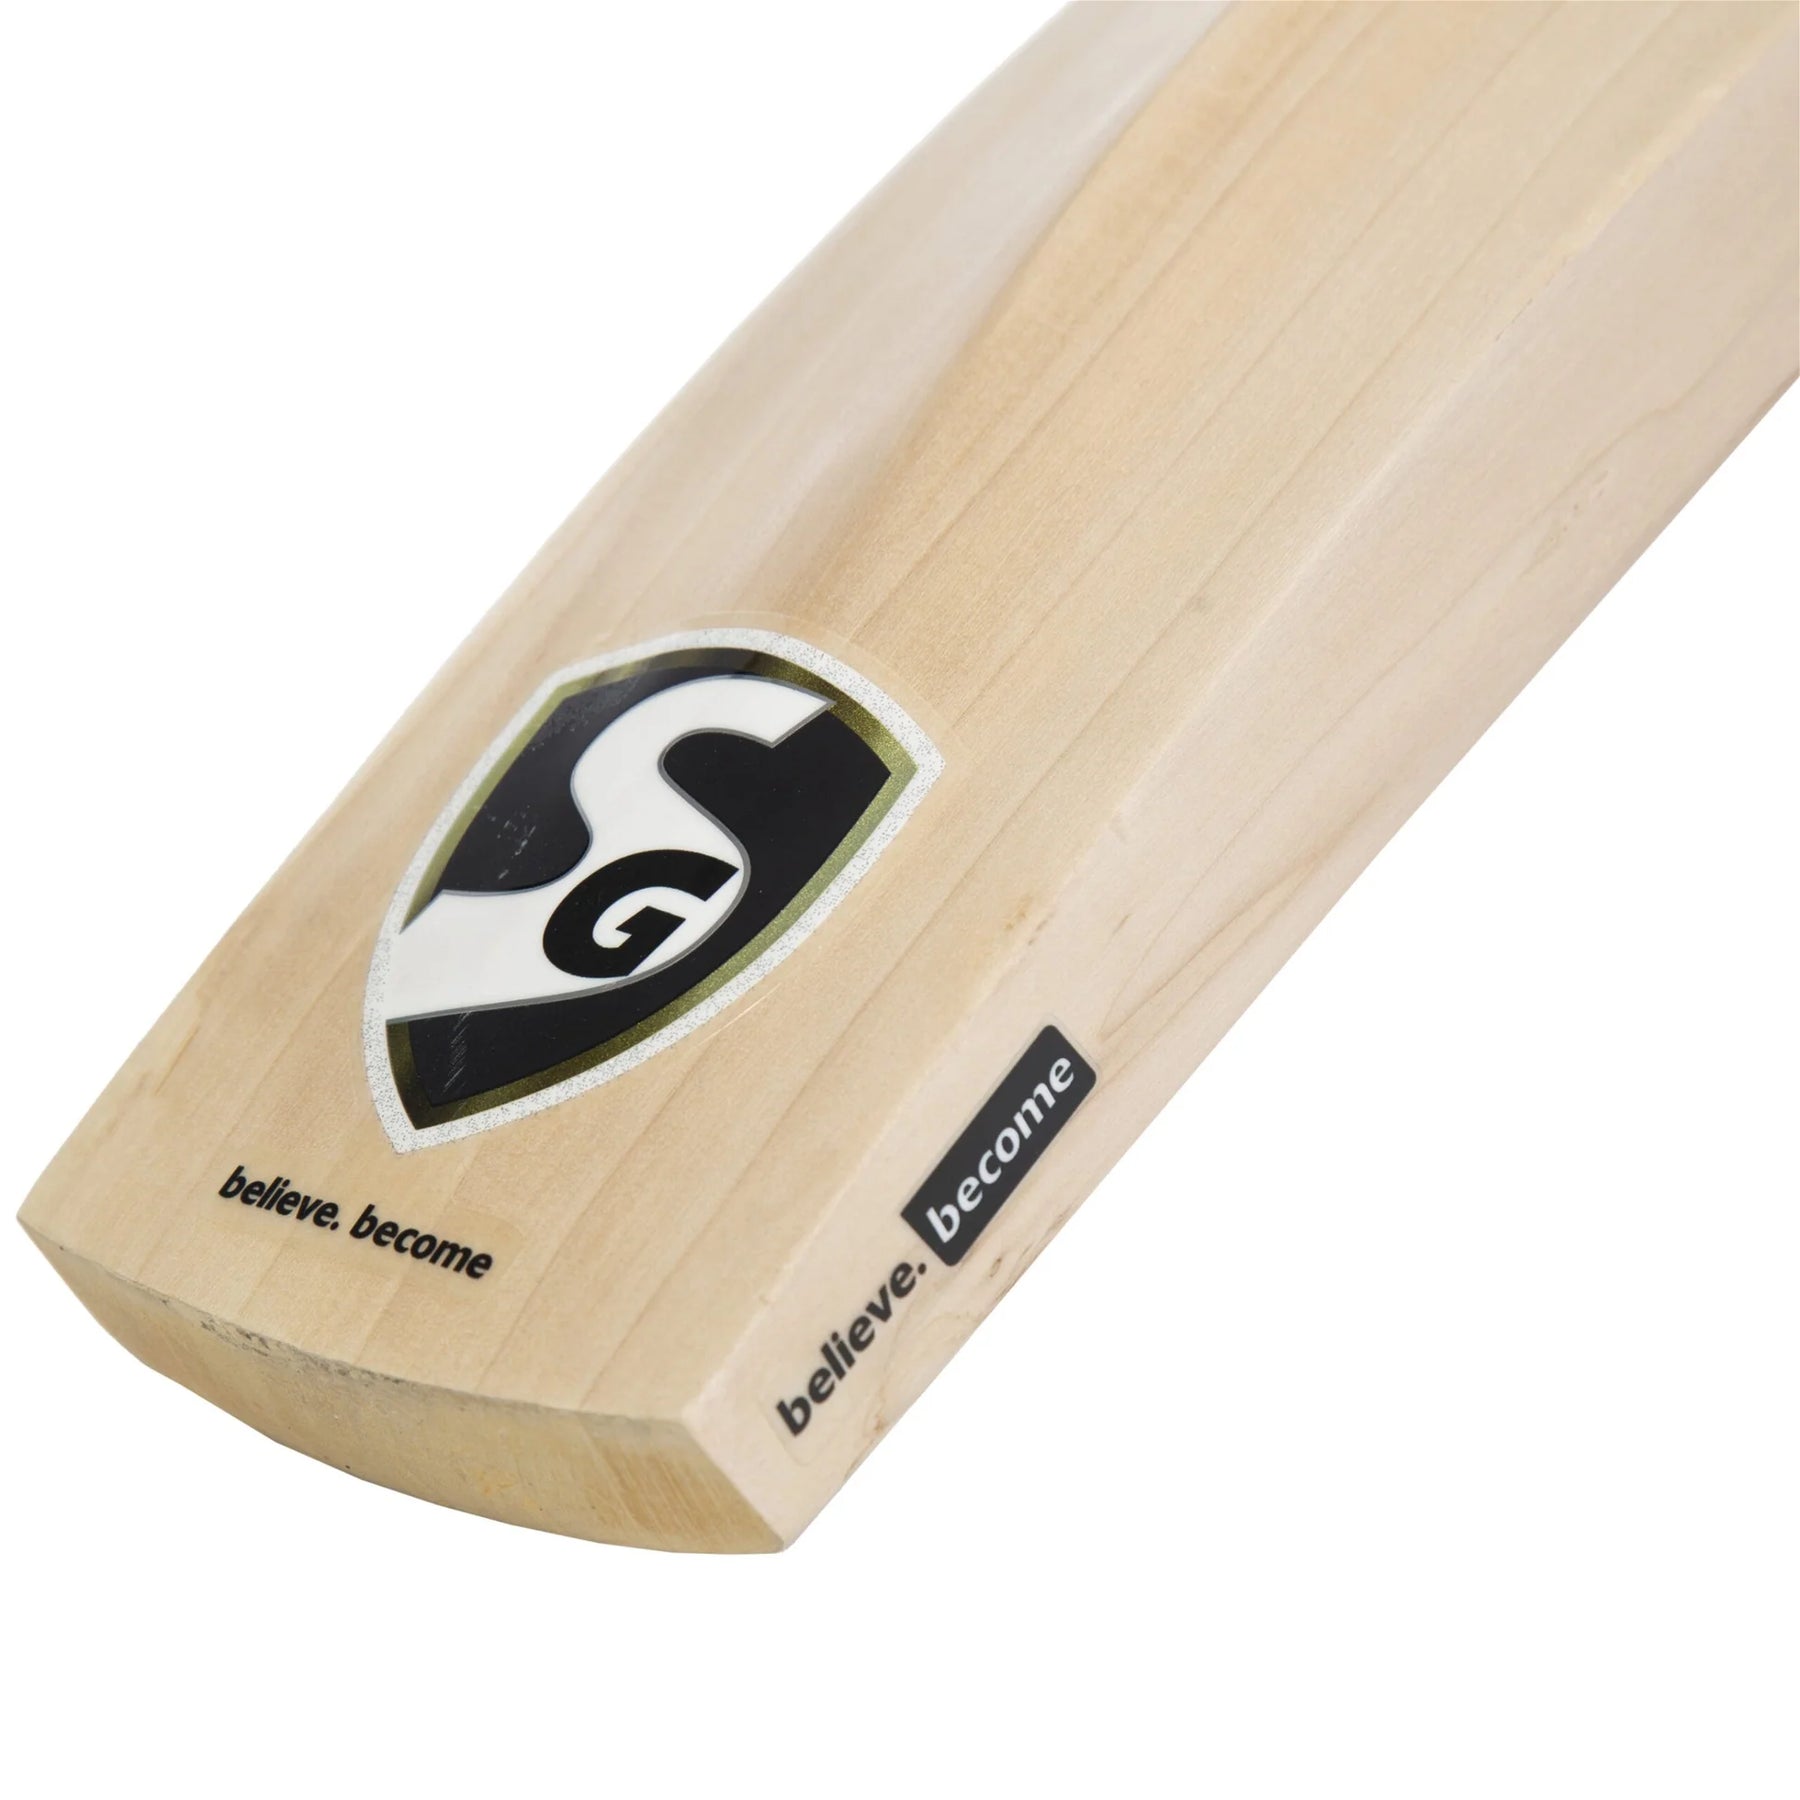 SG Savage Xtreme English Willow Cricket Bat (Hardik Pandya Series)